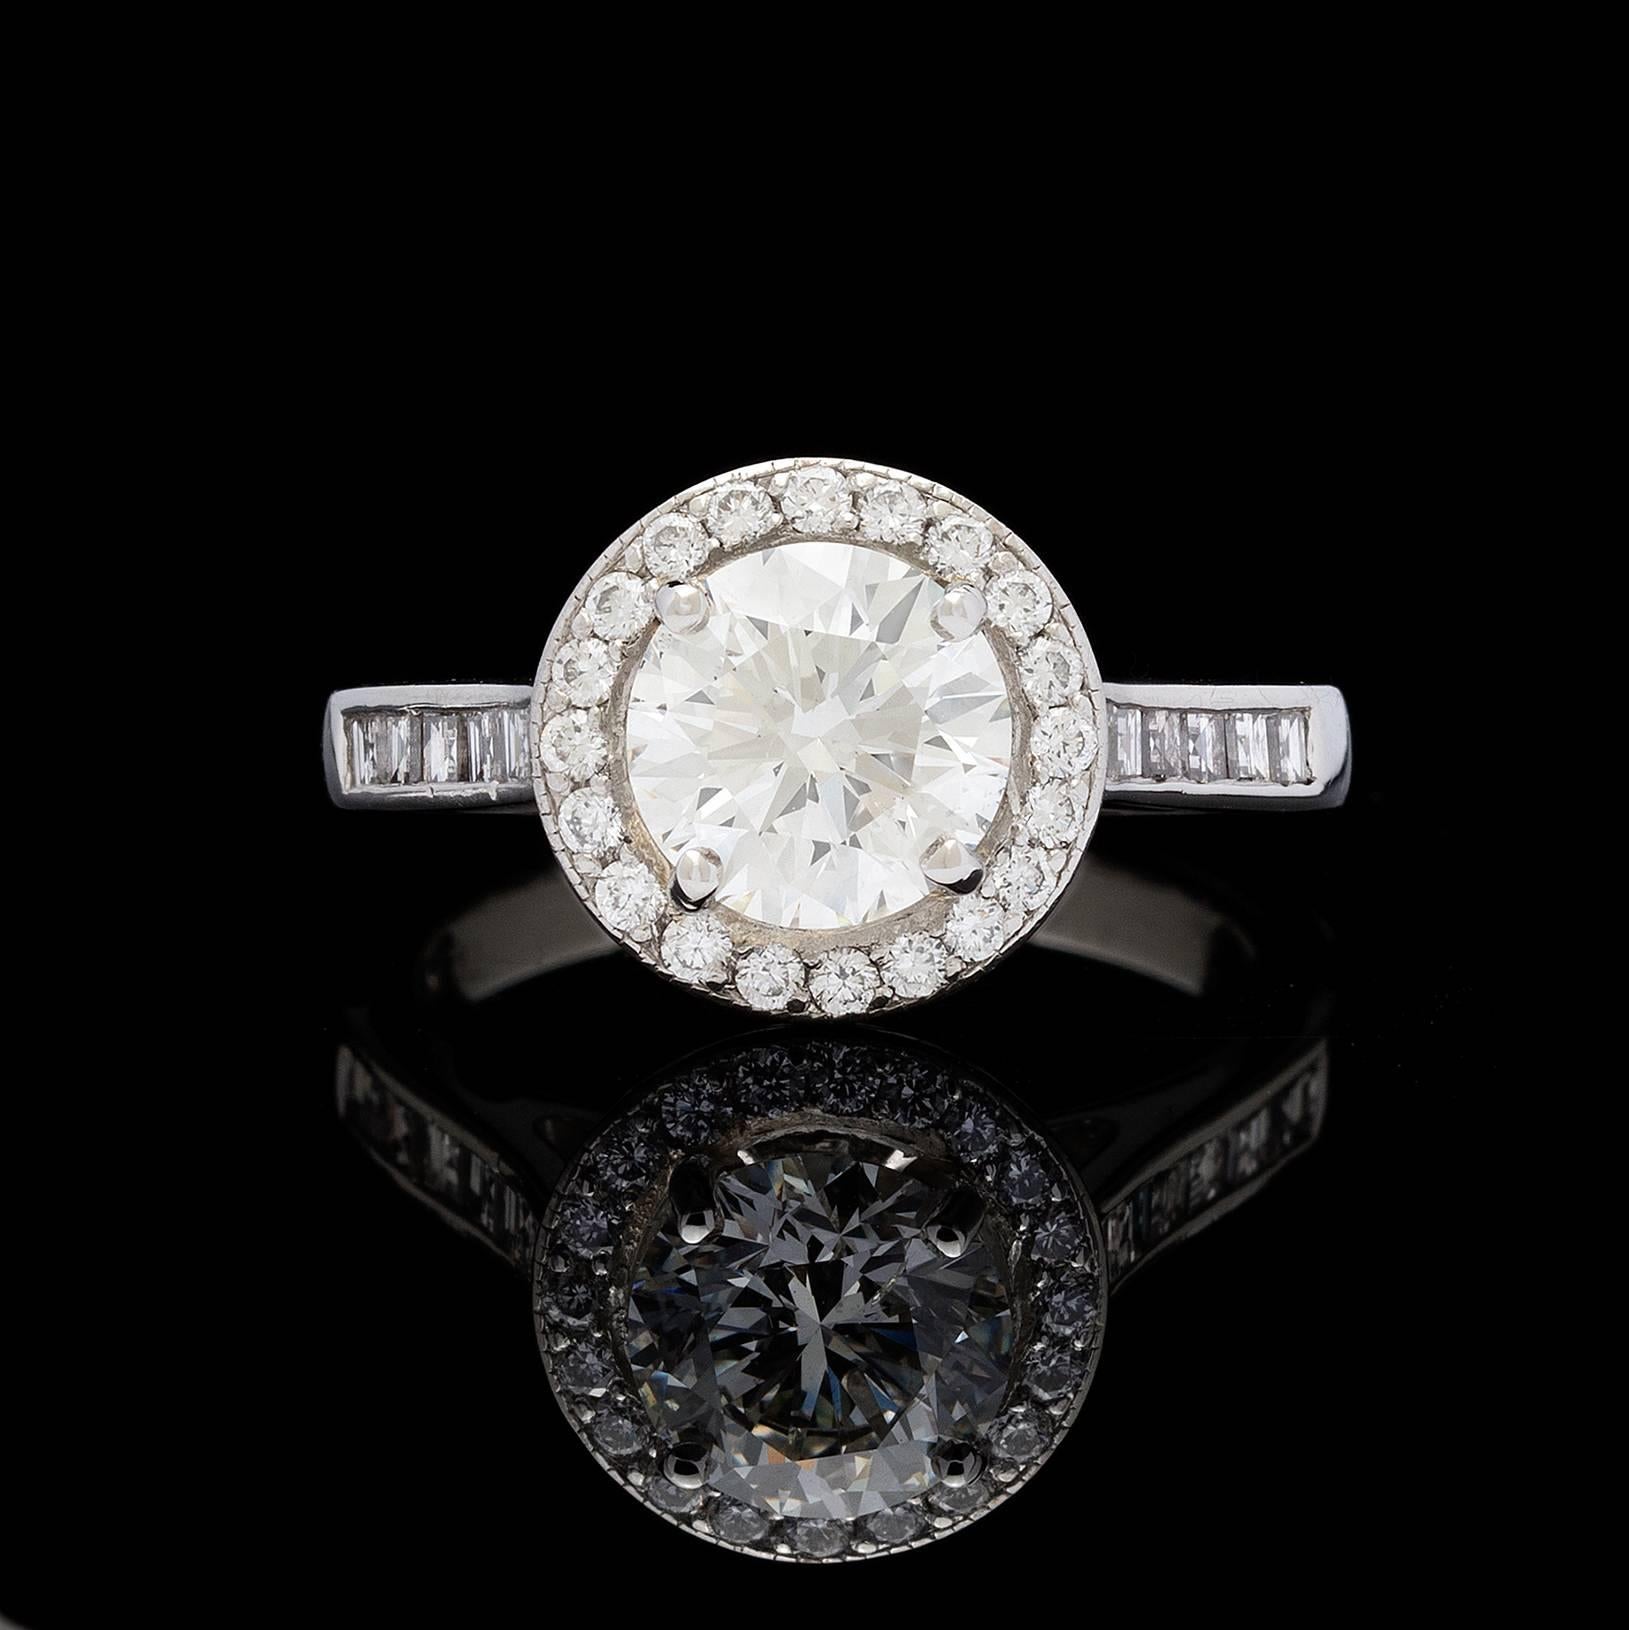 Bague en platine présentant un diamant rond de taille brillant H/SI1 de 1,57 carat, certifié par le GIA, dans un halo de diamants ronds de taille normale.  L'anneau est serti de diamants taille baguette, ce qui crée un joli contraste.  Les diamants